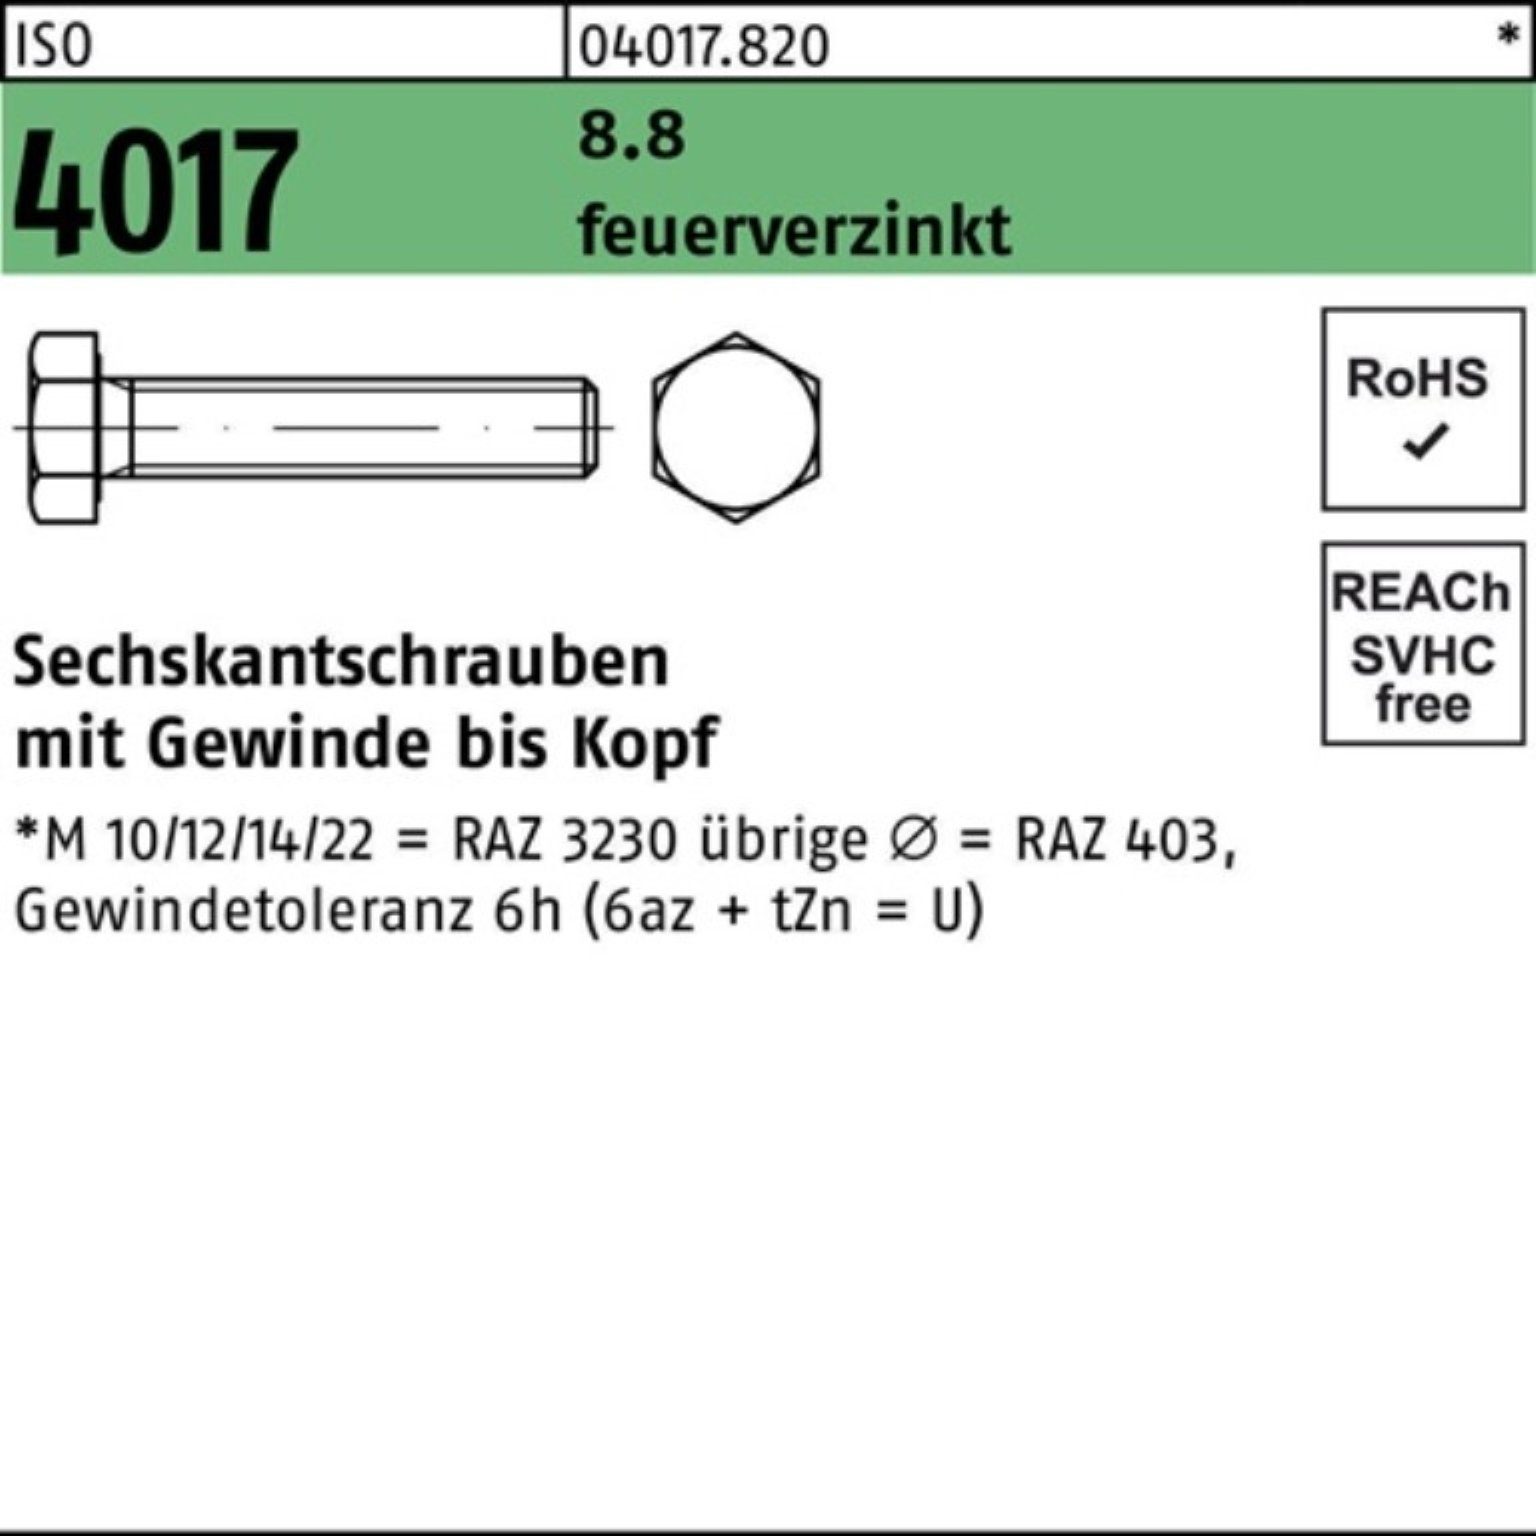 4017 ISO Pack Bufab M20x Sechskantschraube feuerverz. VG 8.8 1 100er St 160 Sechskantschraube